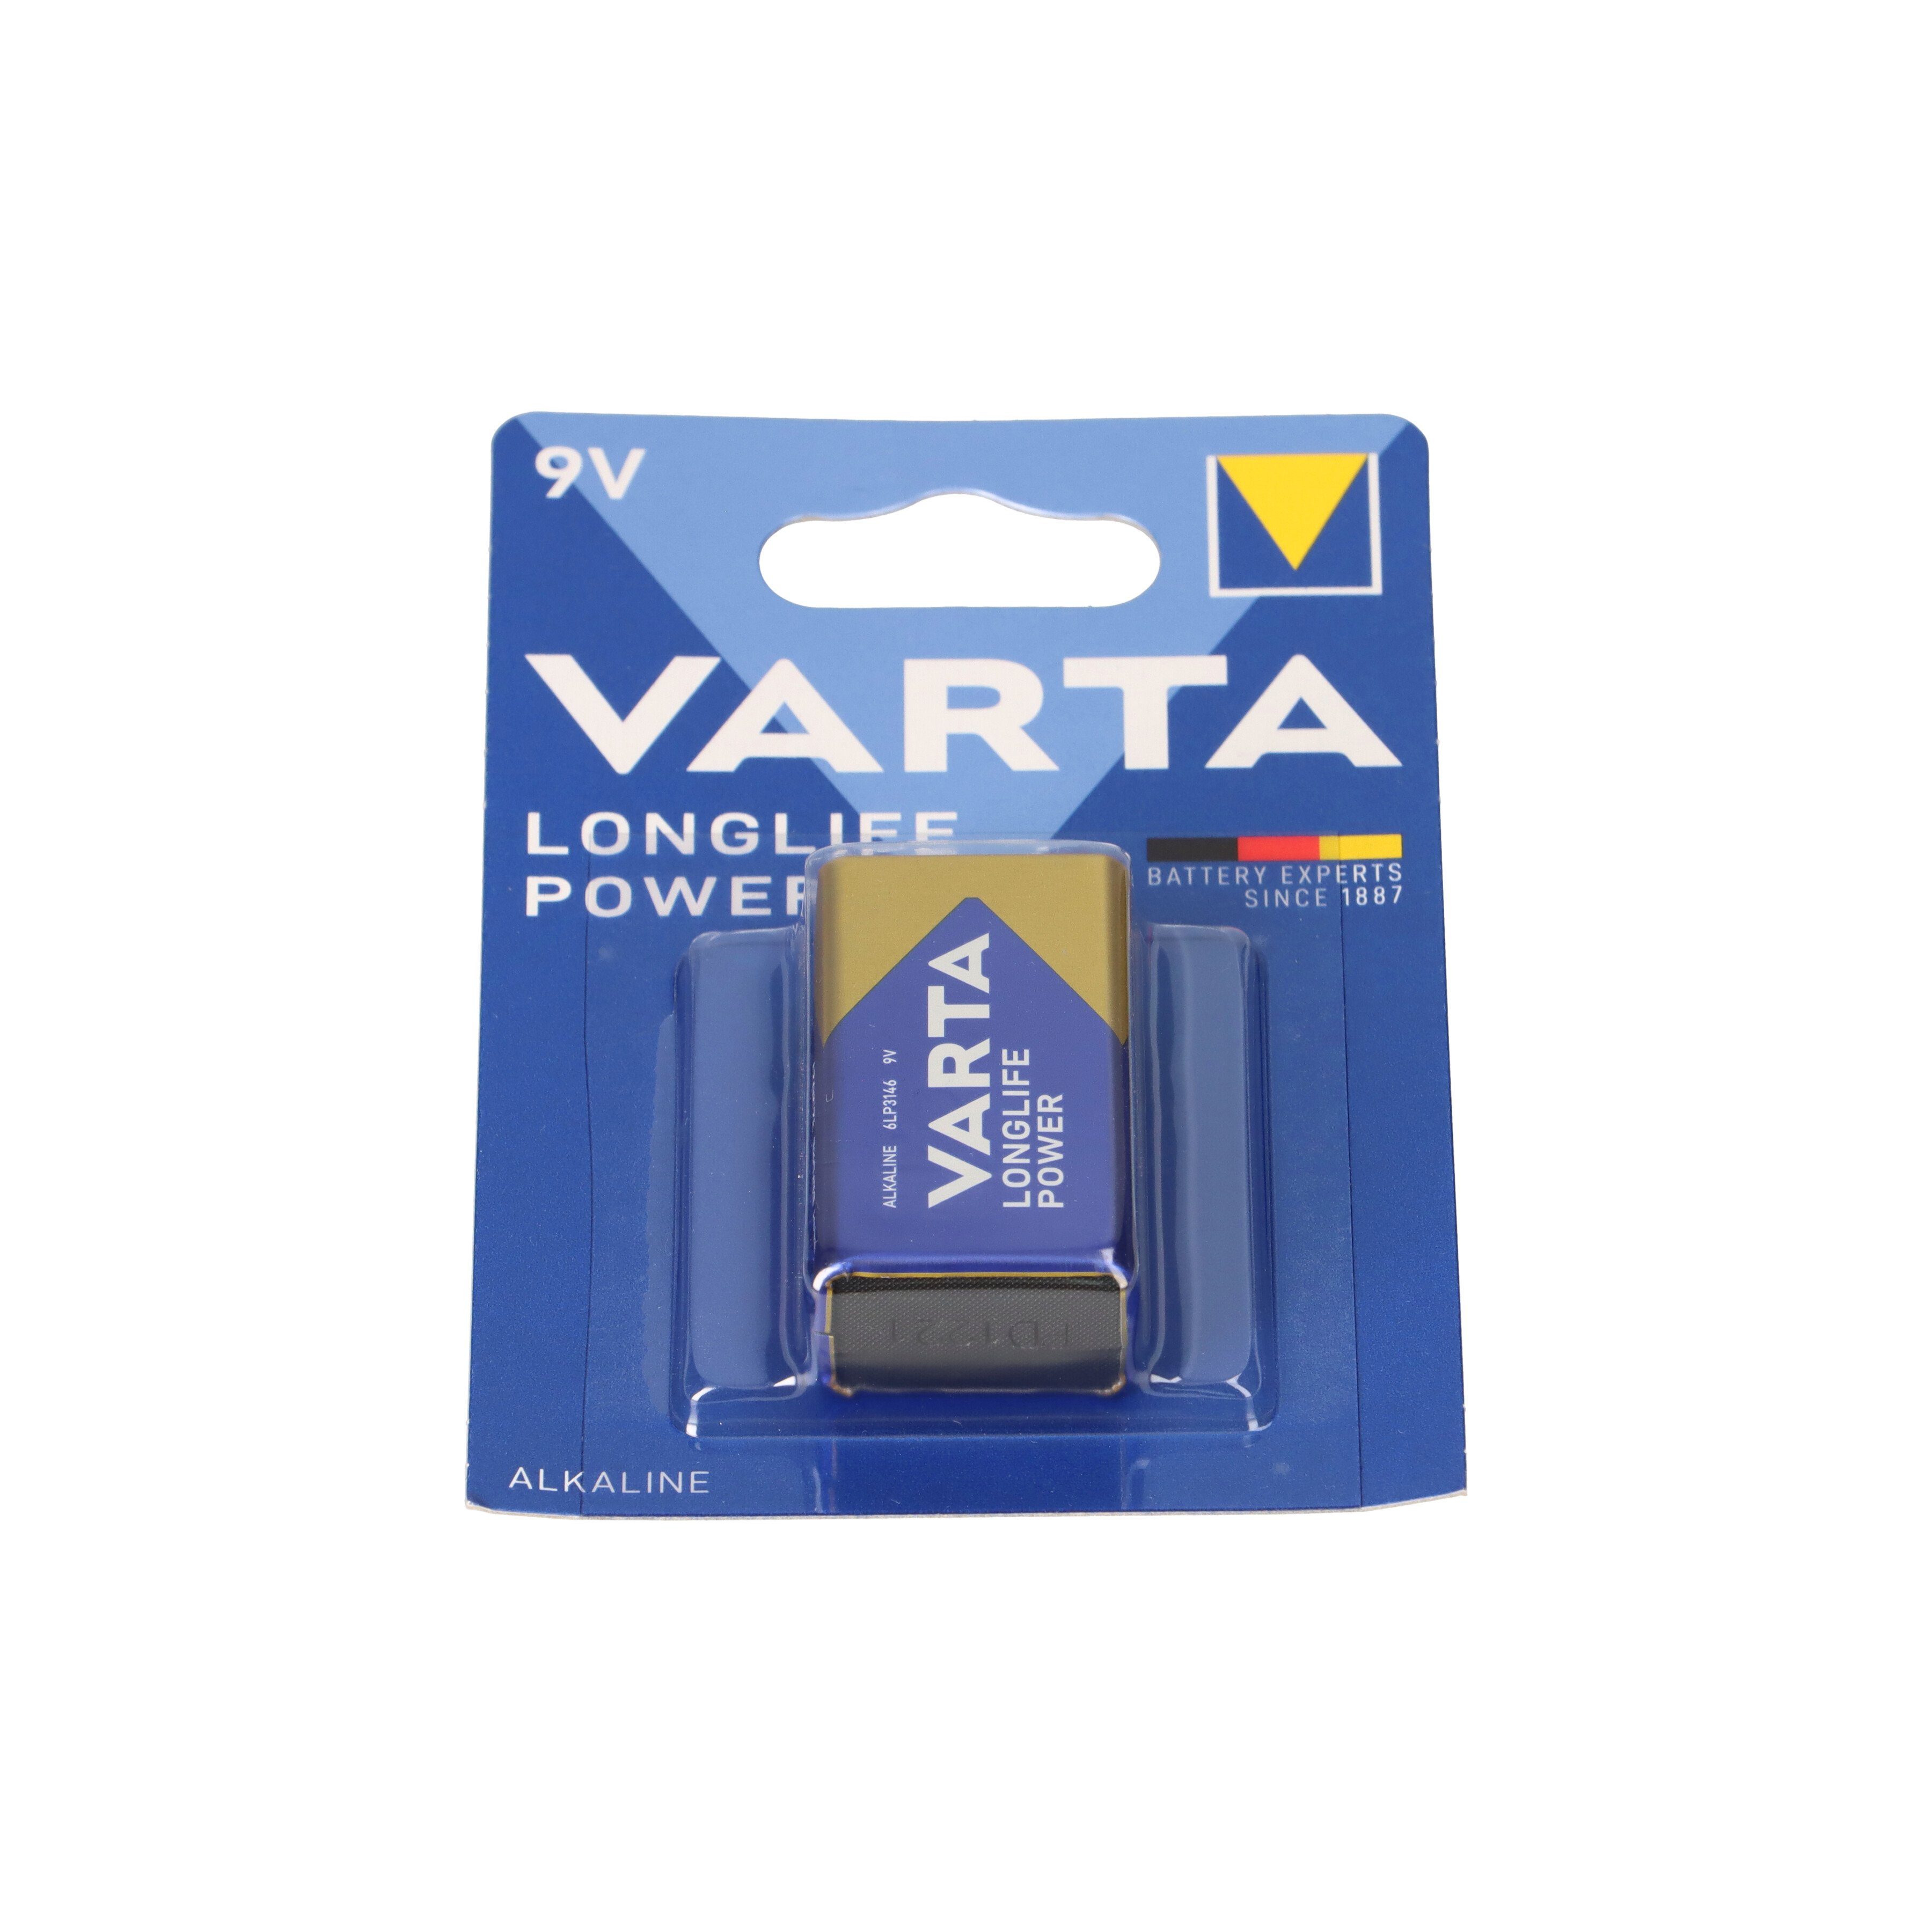 VARTA Varta 4922 Longlife 9V-Block Packung 10er Batterie Blister Power